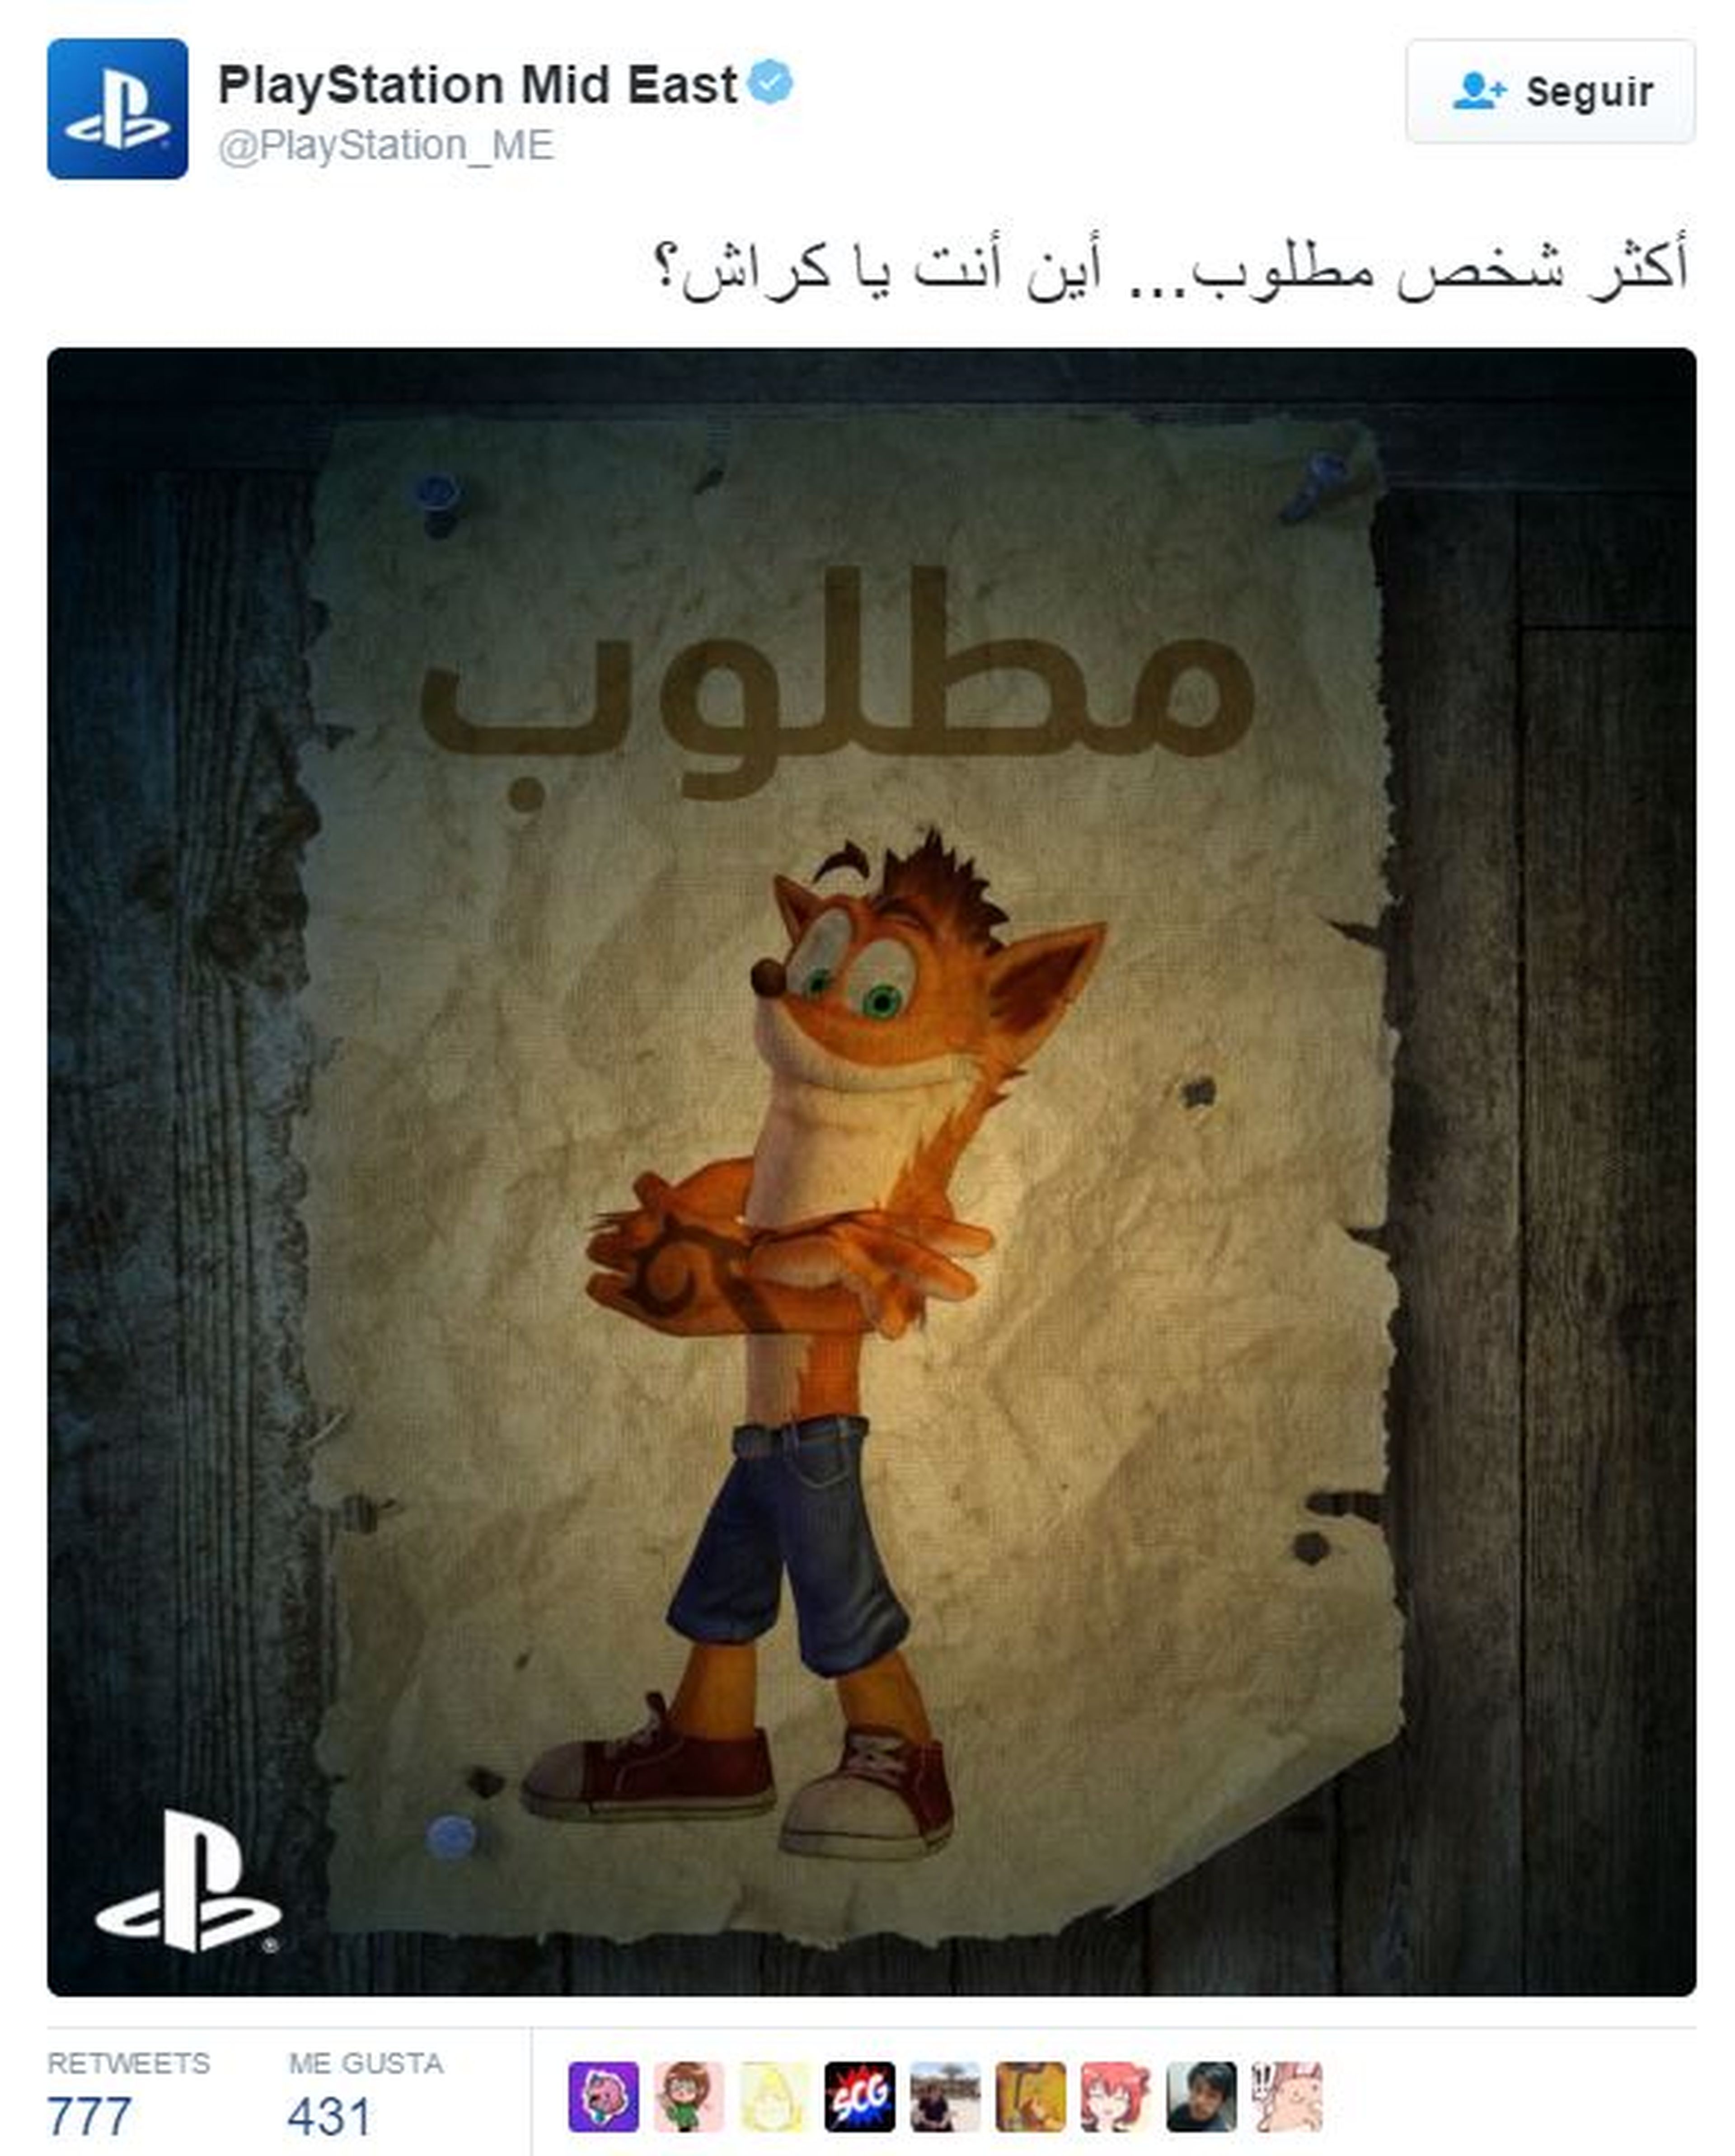 Crash Bandicoot - Sony publica un teaser. ¿Posible regreso?